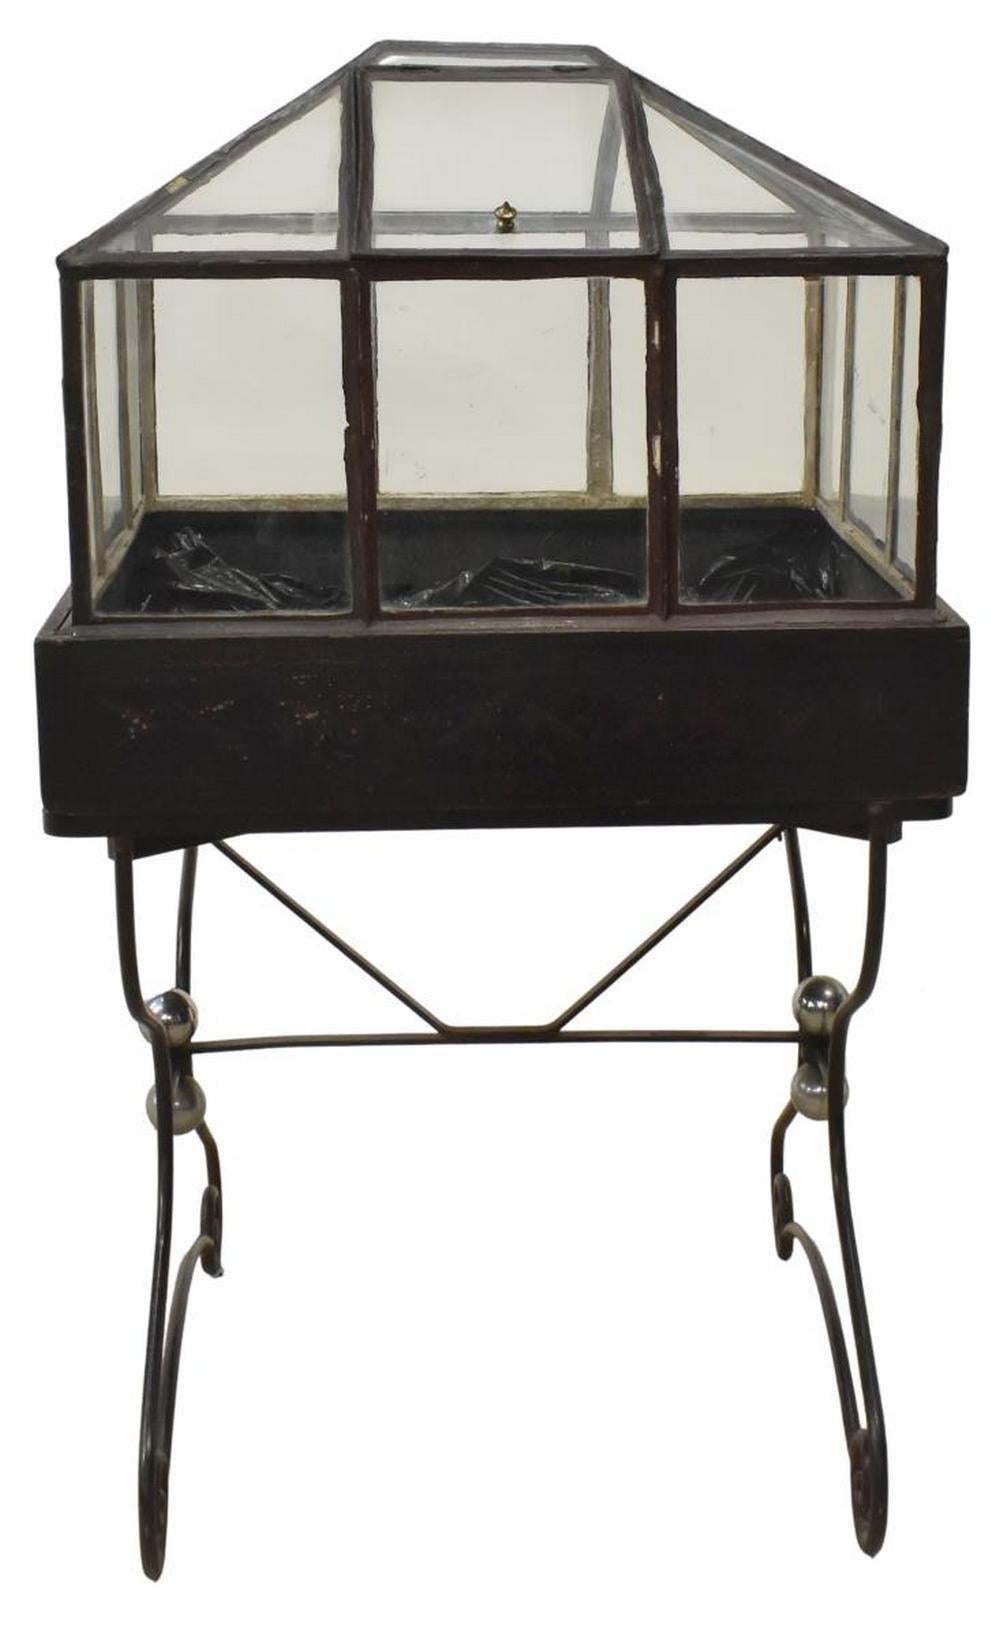 Boîte/terrarium Wardian de style victorien, boîte vitrée avec toit en pente, porte d'accès à charnière, sur un support en fer forgé à volutes, environ 53 